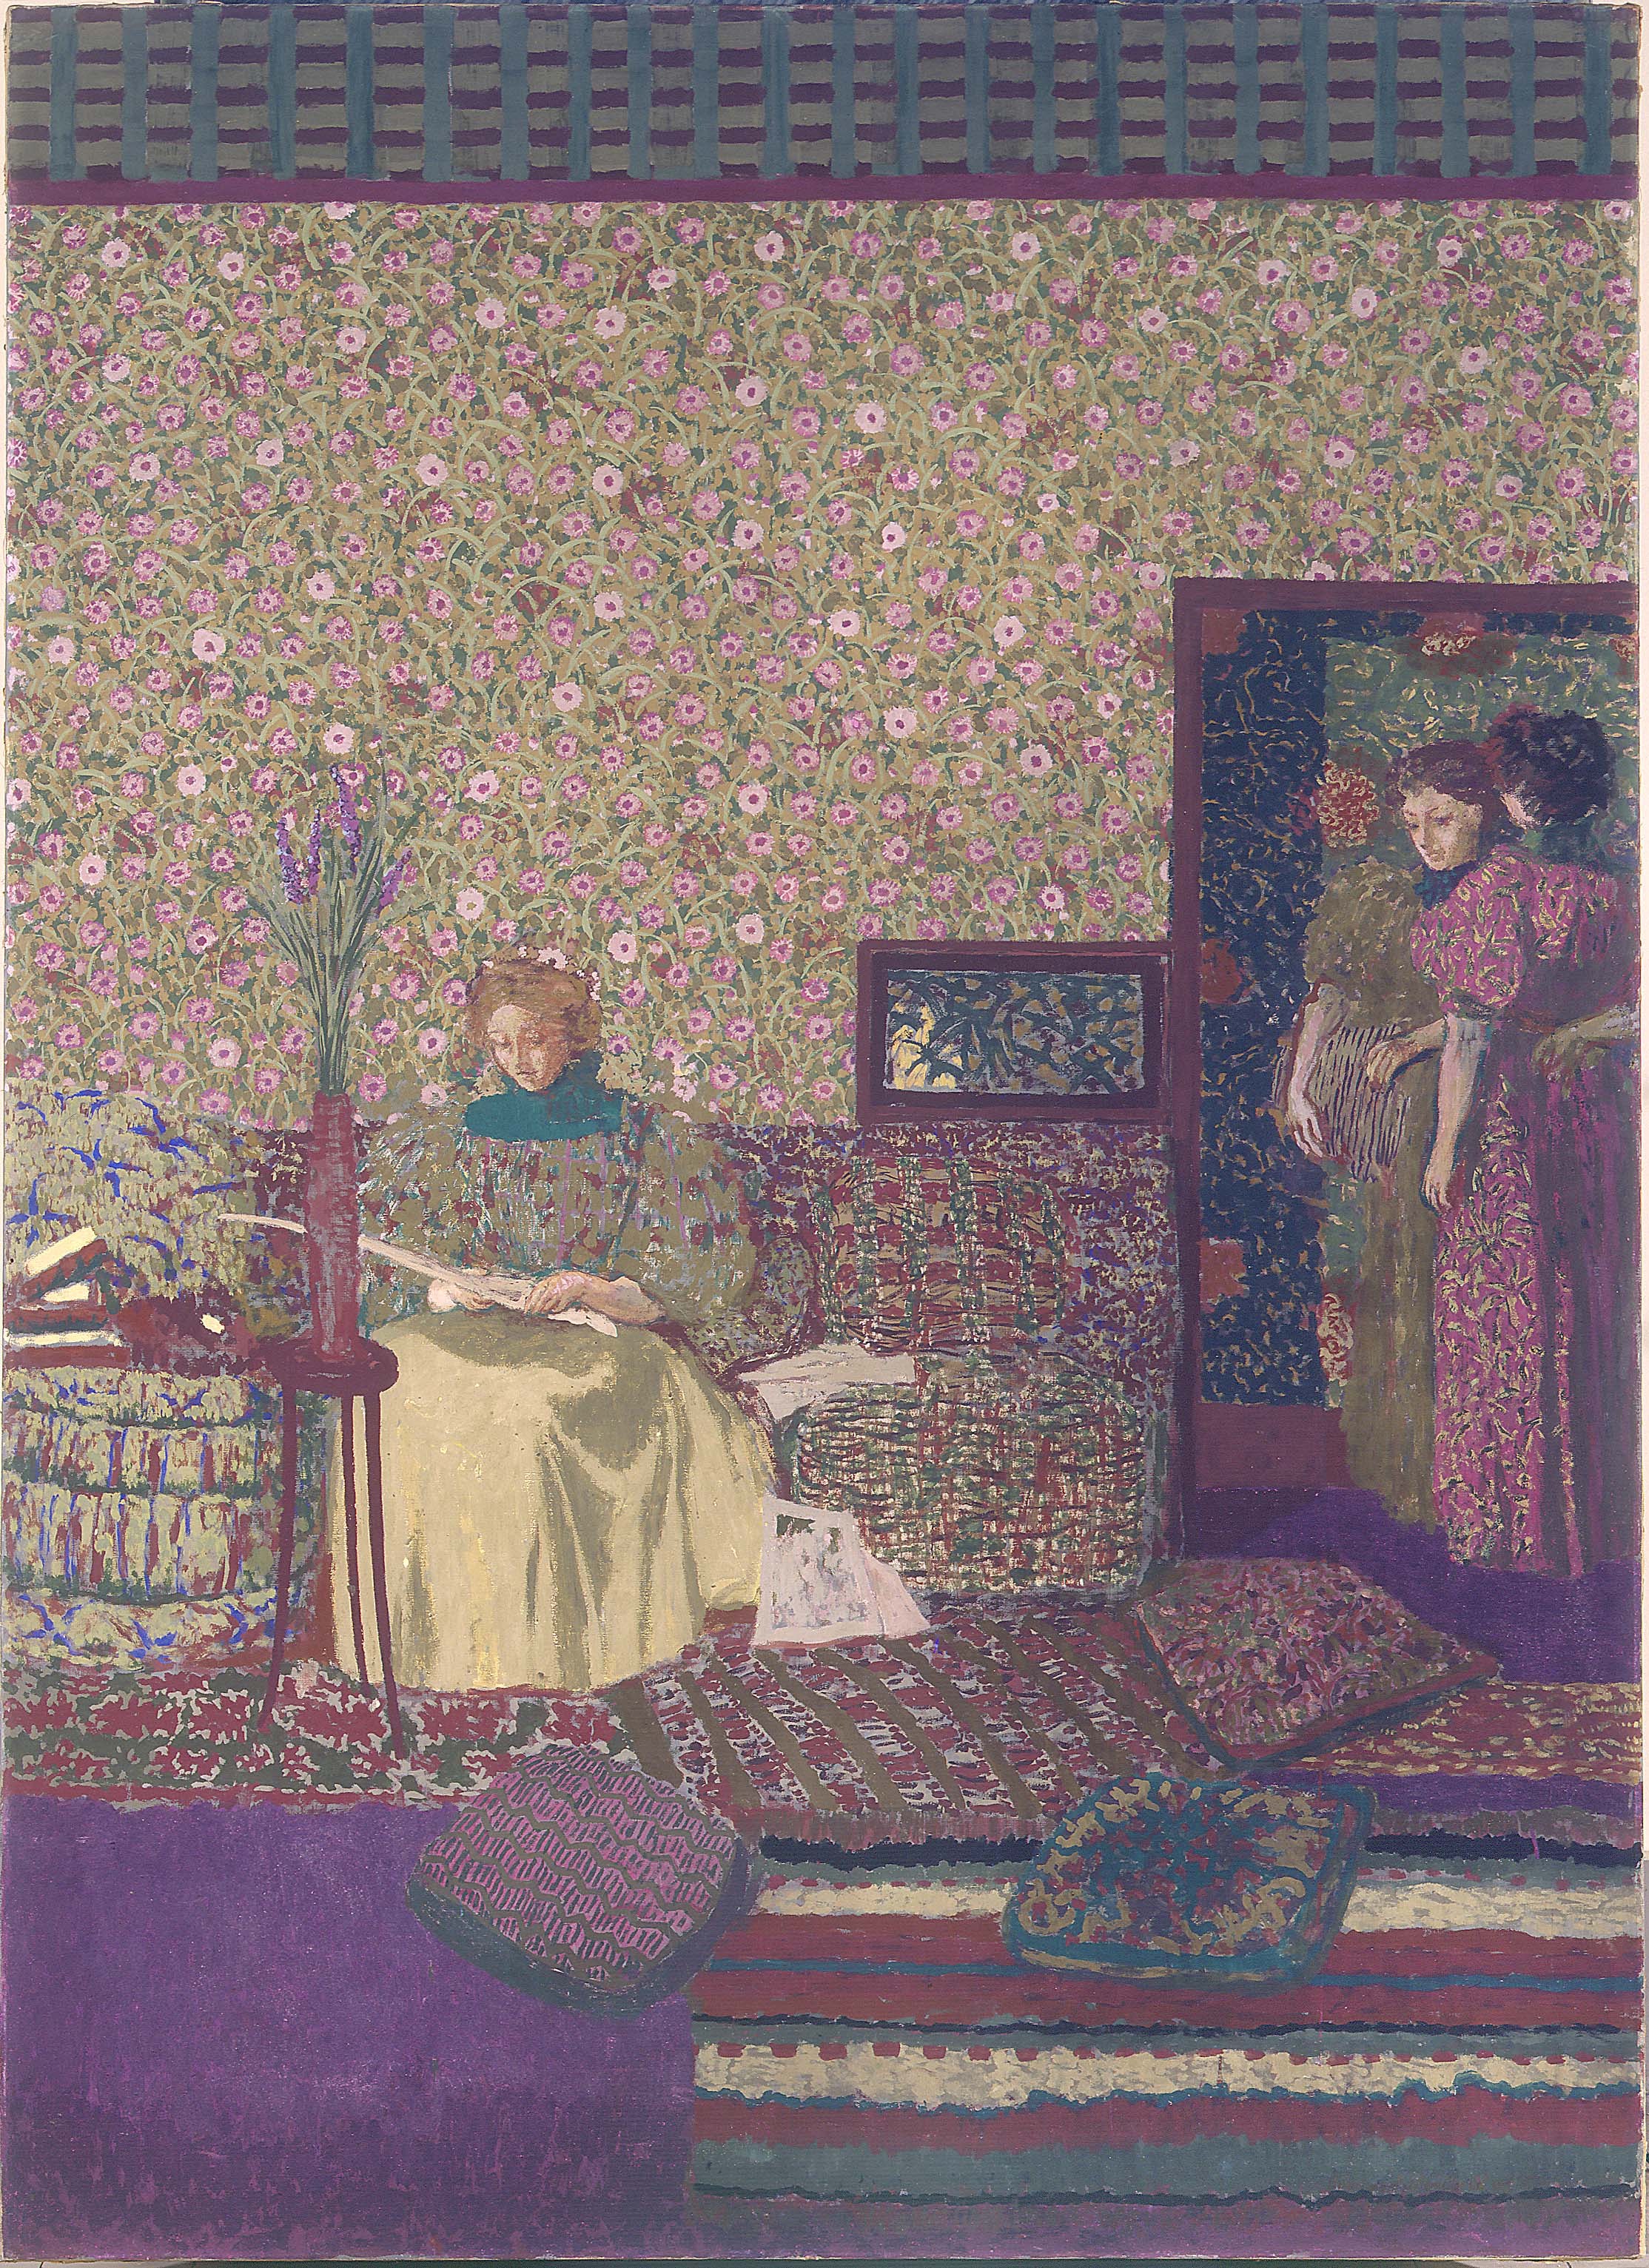 室内人像 by 爱德华 维拉德 - 1896 - 212.5 x 154.5 cm 